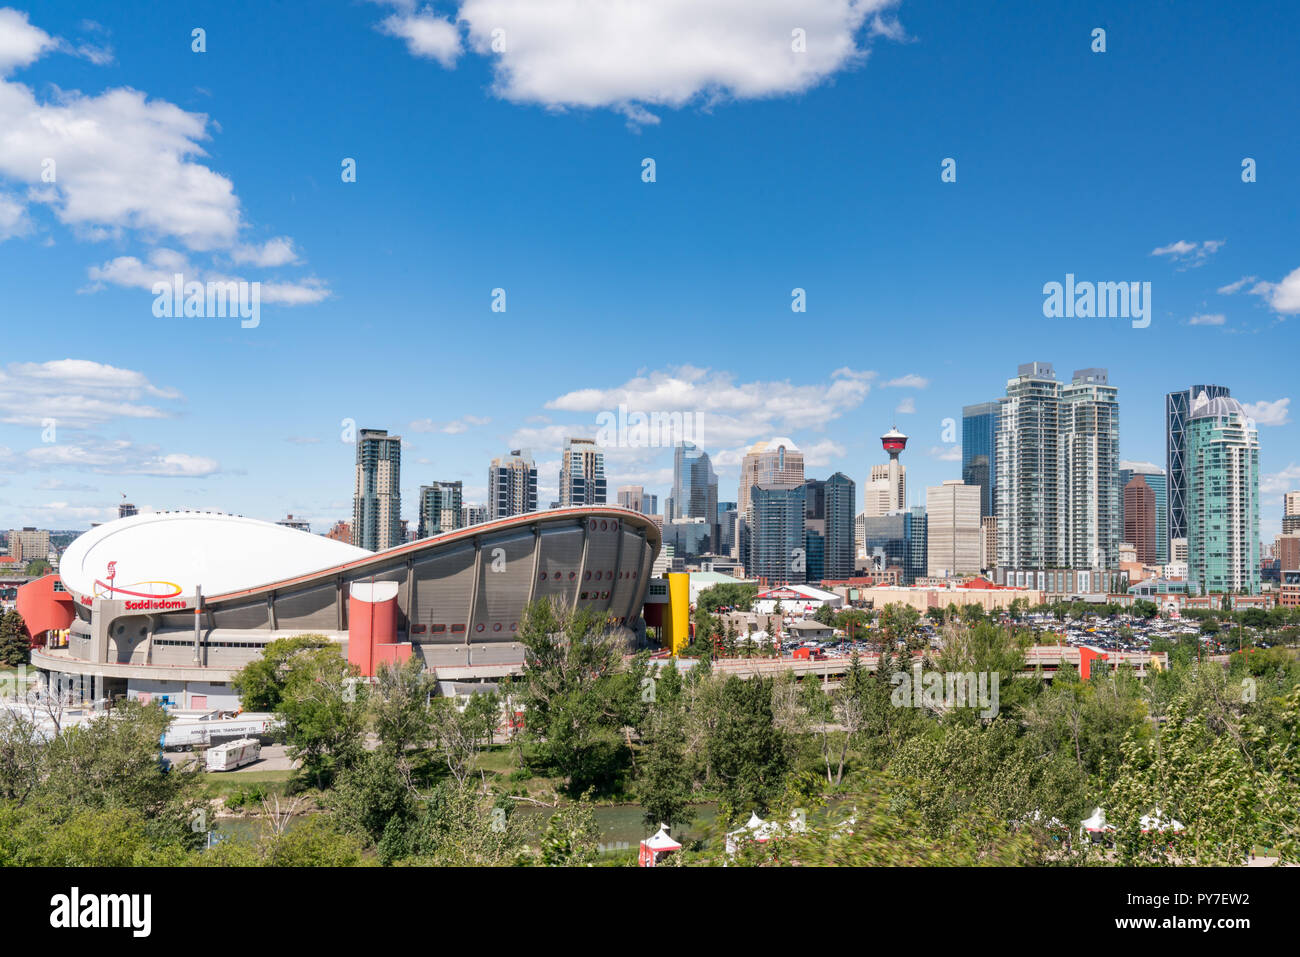 CALGARY, CANADA - JULY 6, 2018:  Skyline of the city Calgary, Alberta, Canada Stock Photo